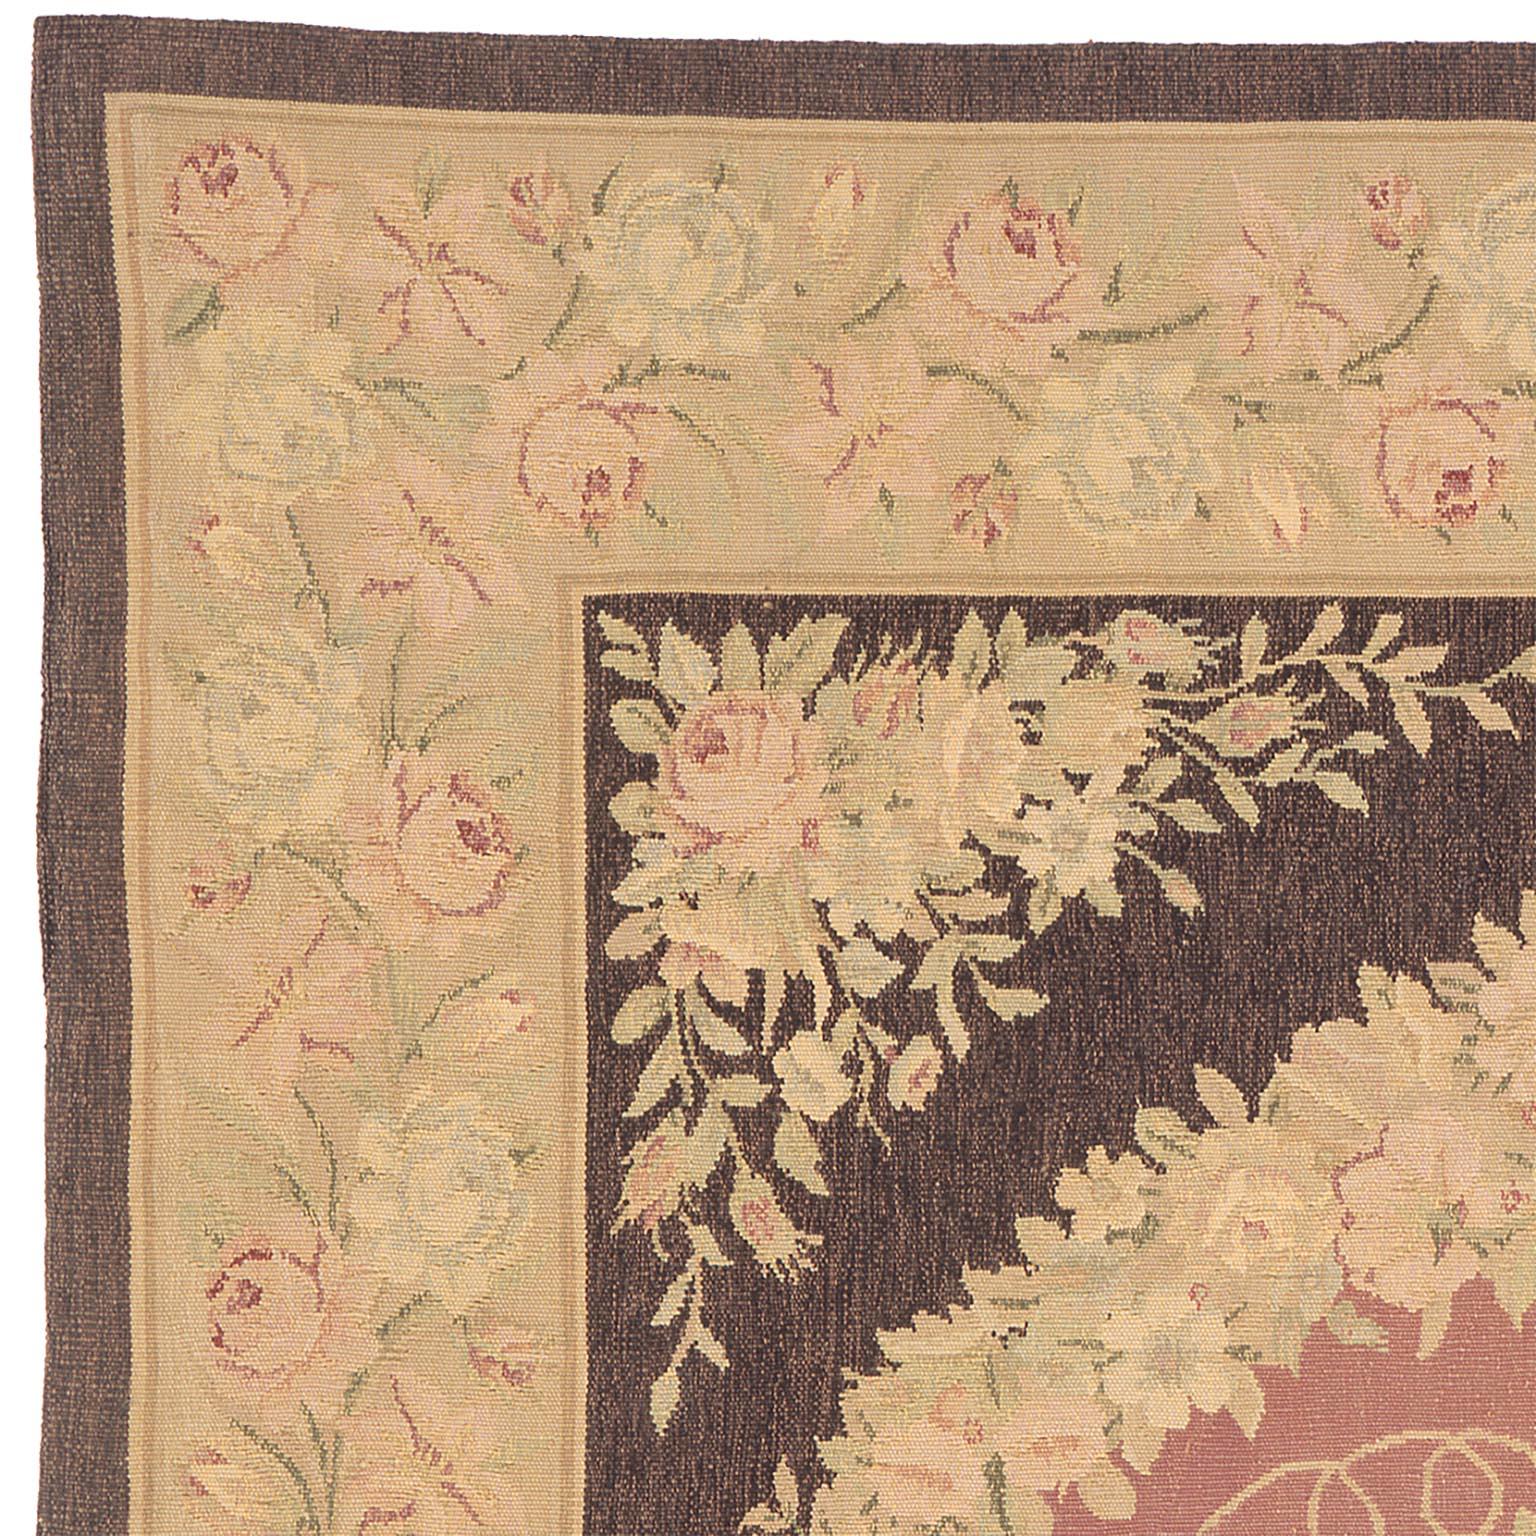 Vieux tapis français d'Aubusson
Motif en forme de bec et de pourpre
Bordure florale avec médaillon central
1920

FJ Hakimian #2627.